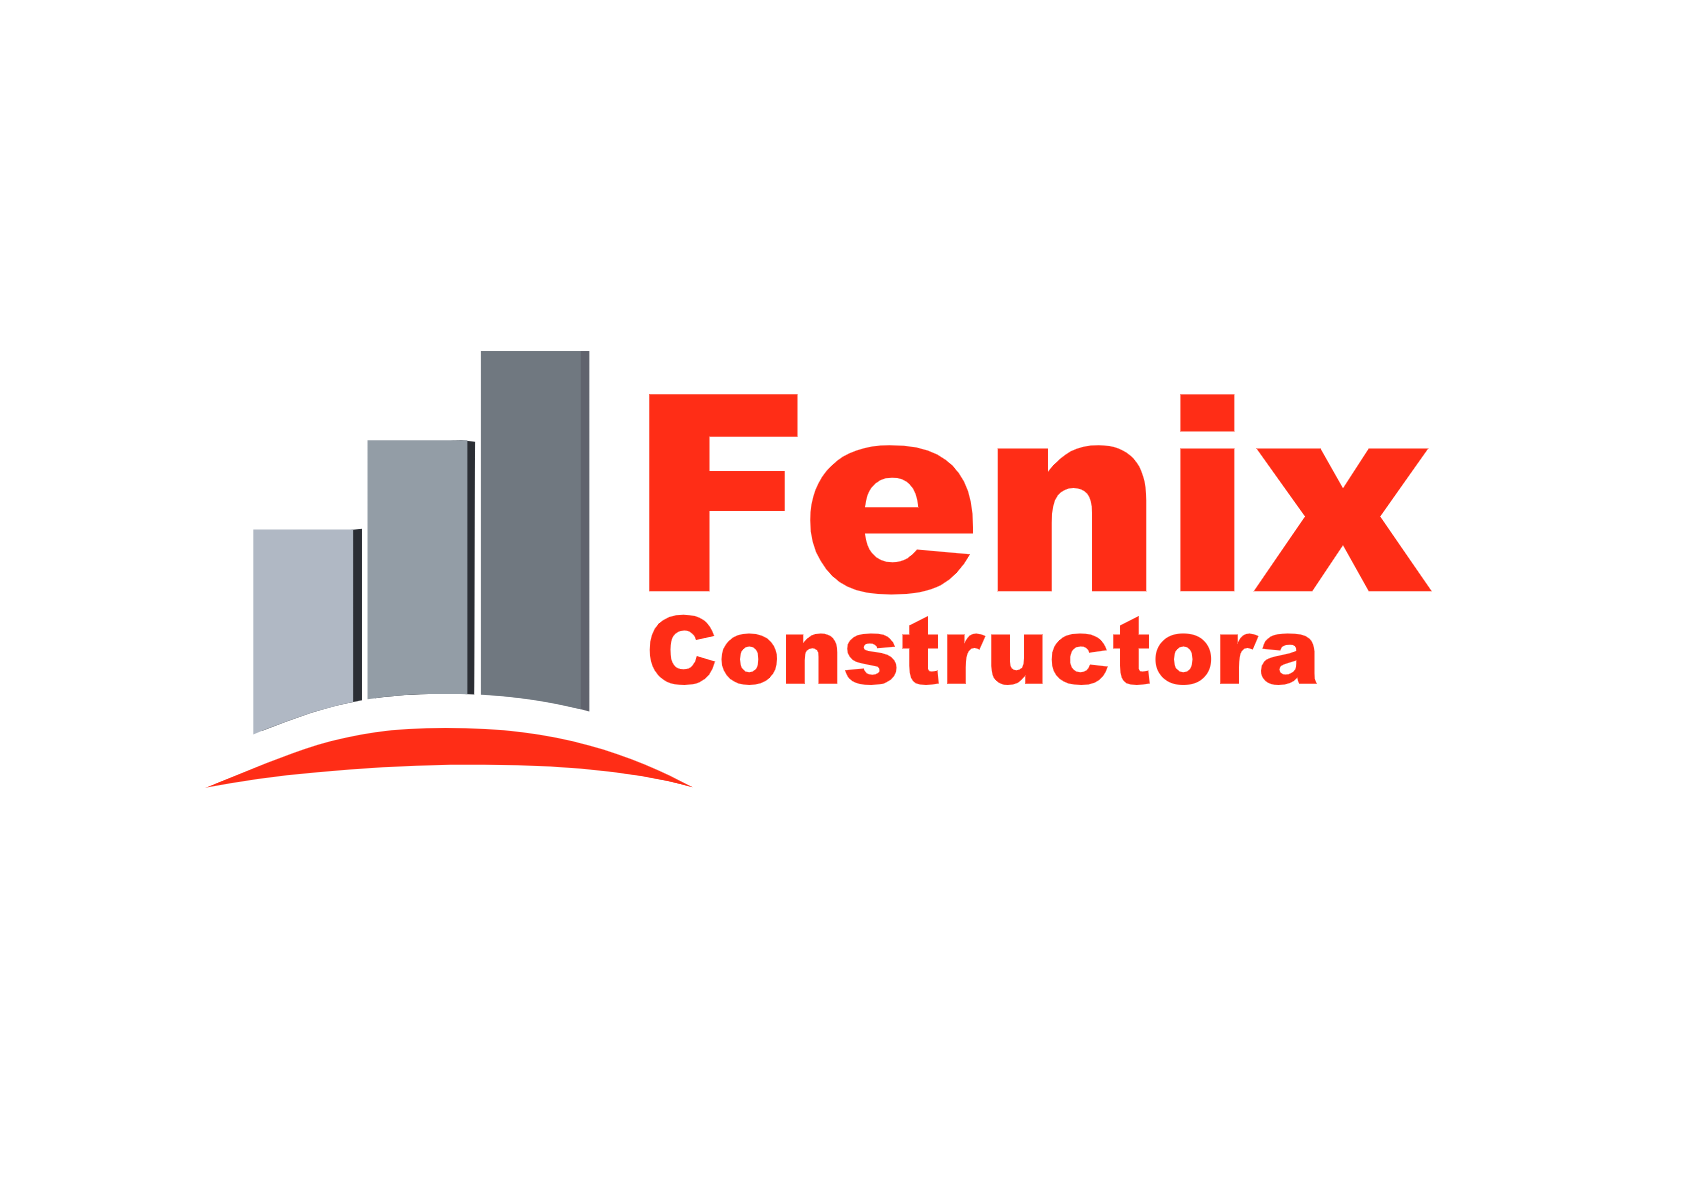 Fenix Constructora